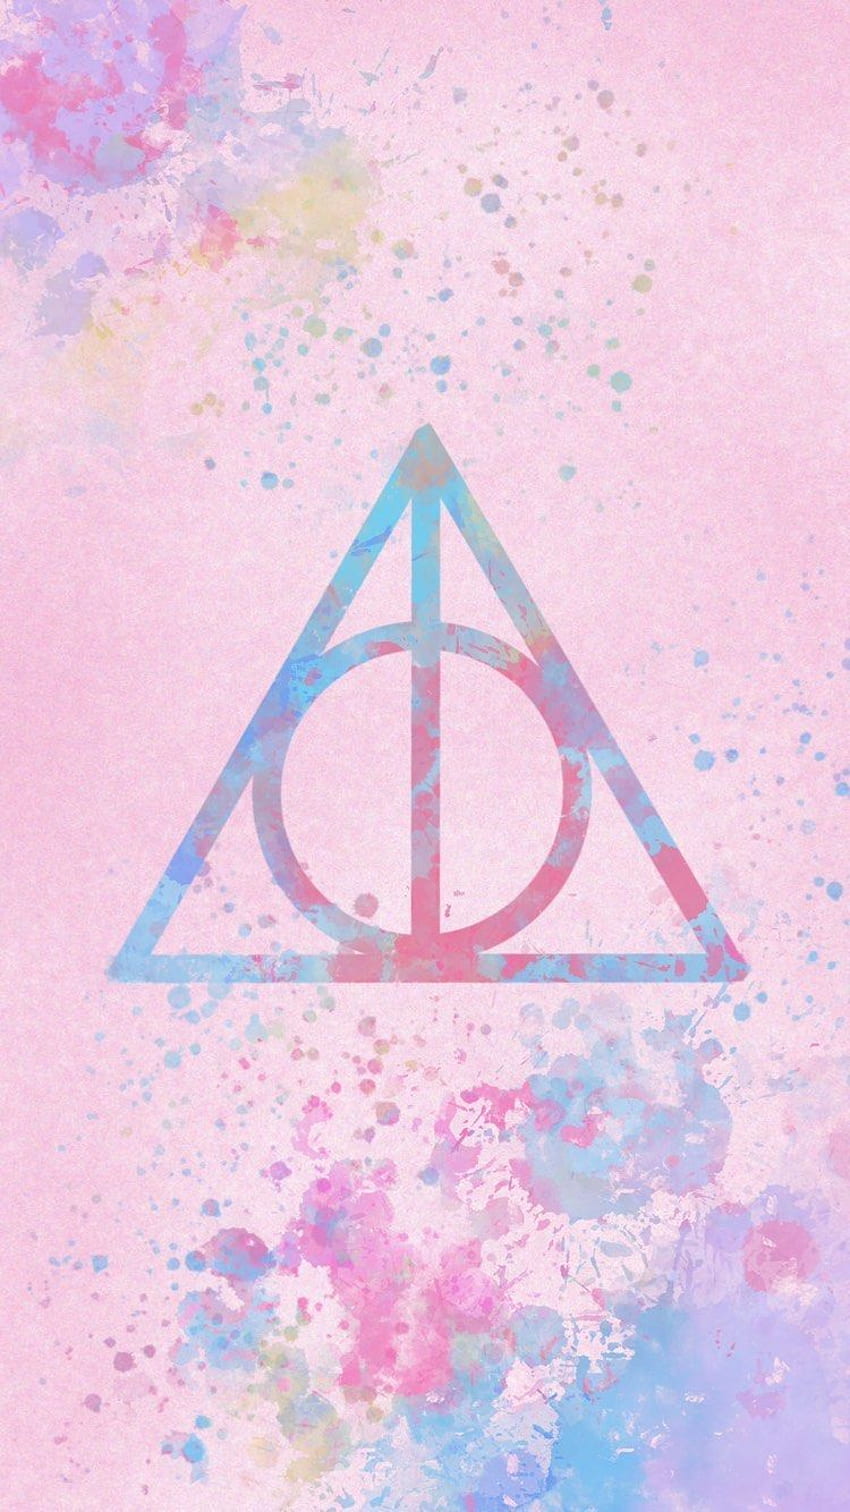 Đừng bỏ lỡ cơ hội để sở hữu một bức hình nền HD Harry Potter màu hồng đầy tinh tế! Hình ảnh này đem lại cảm giác tươi mới và sức sống với gam màu hồng nhẹ nhàng kết hợp cùng hình ảnh chiếc cây thần mộc. Bạn sẽ không thể rời mắt khỏi hình nền đẹp này.